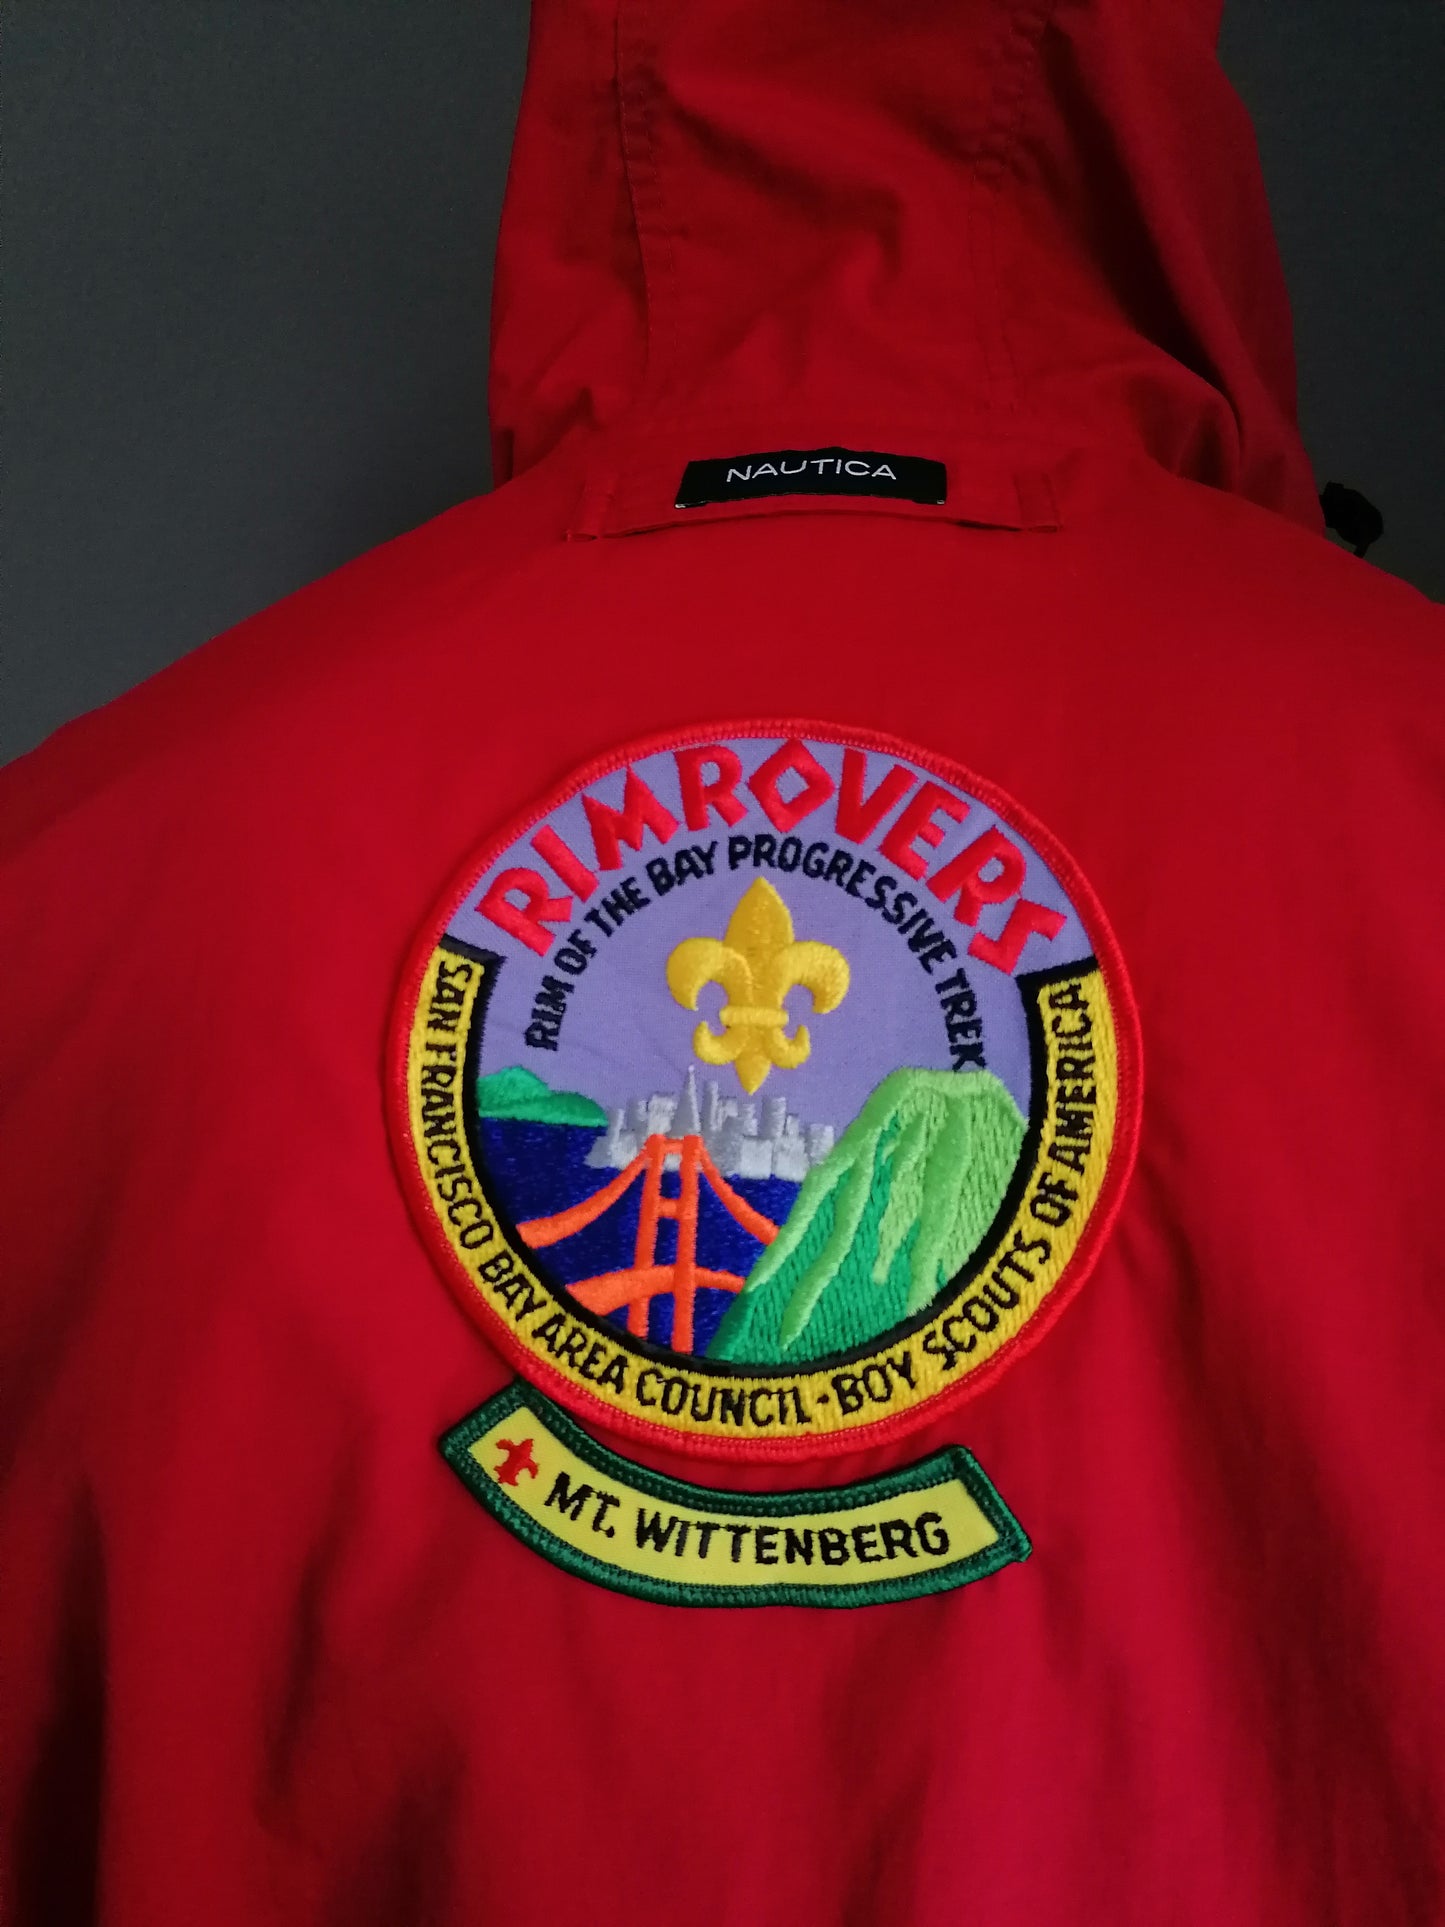 Nylon Nautica Boy Scout vintage Jack/giacca estiva. Rosso colorato. Dimensione M / L.